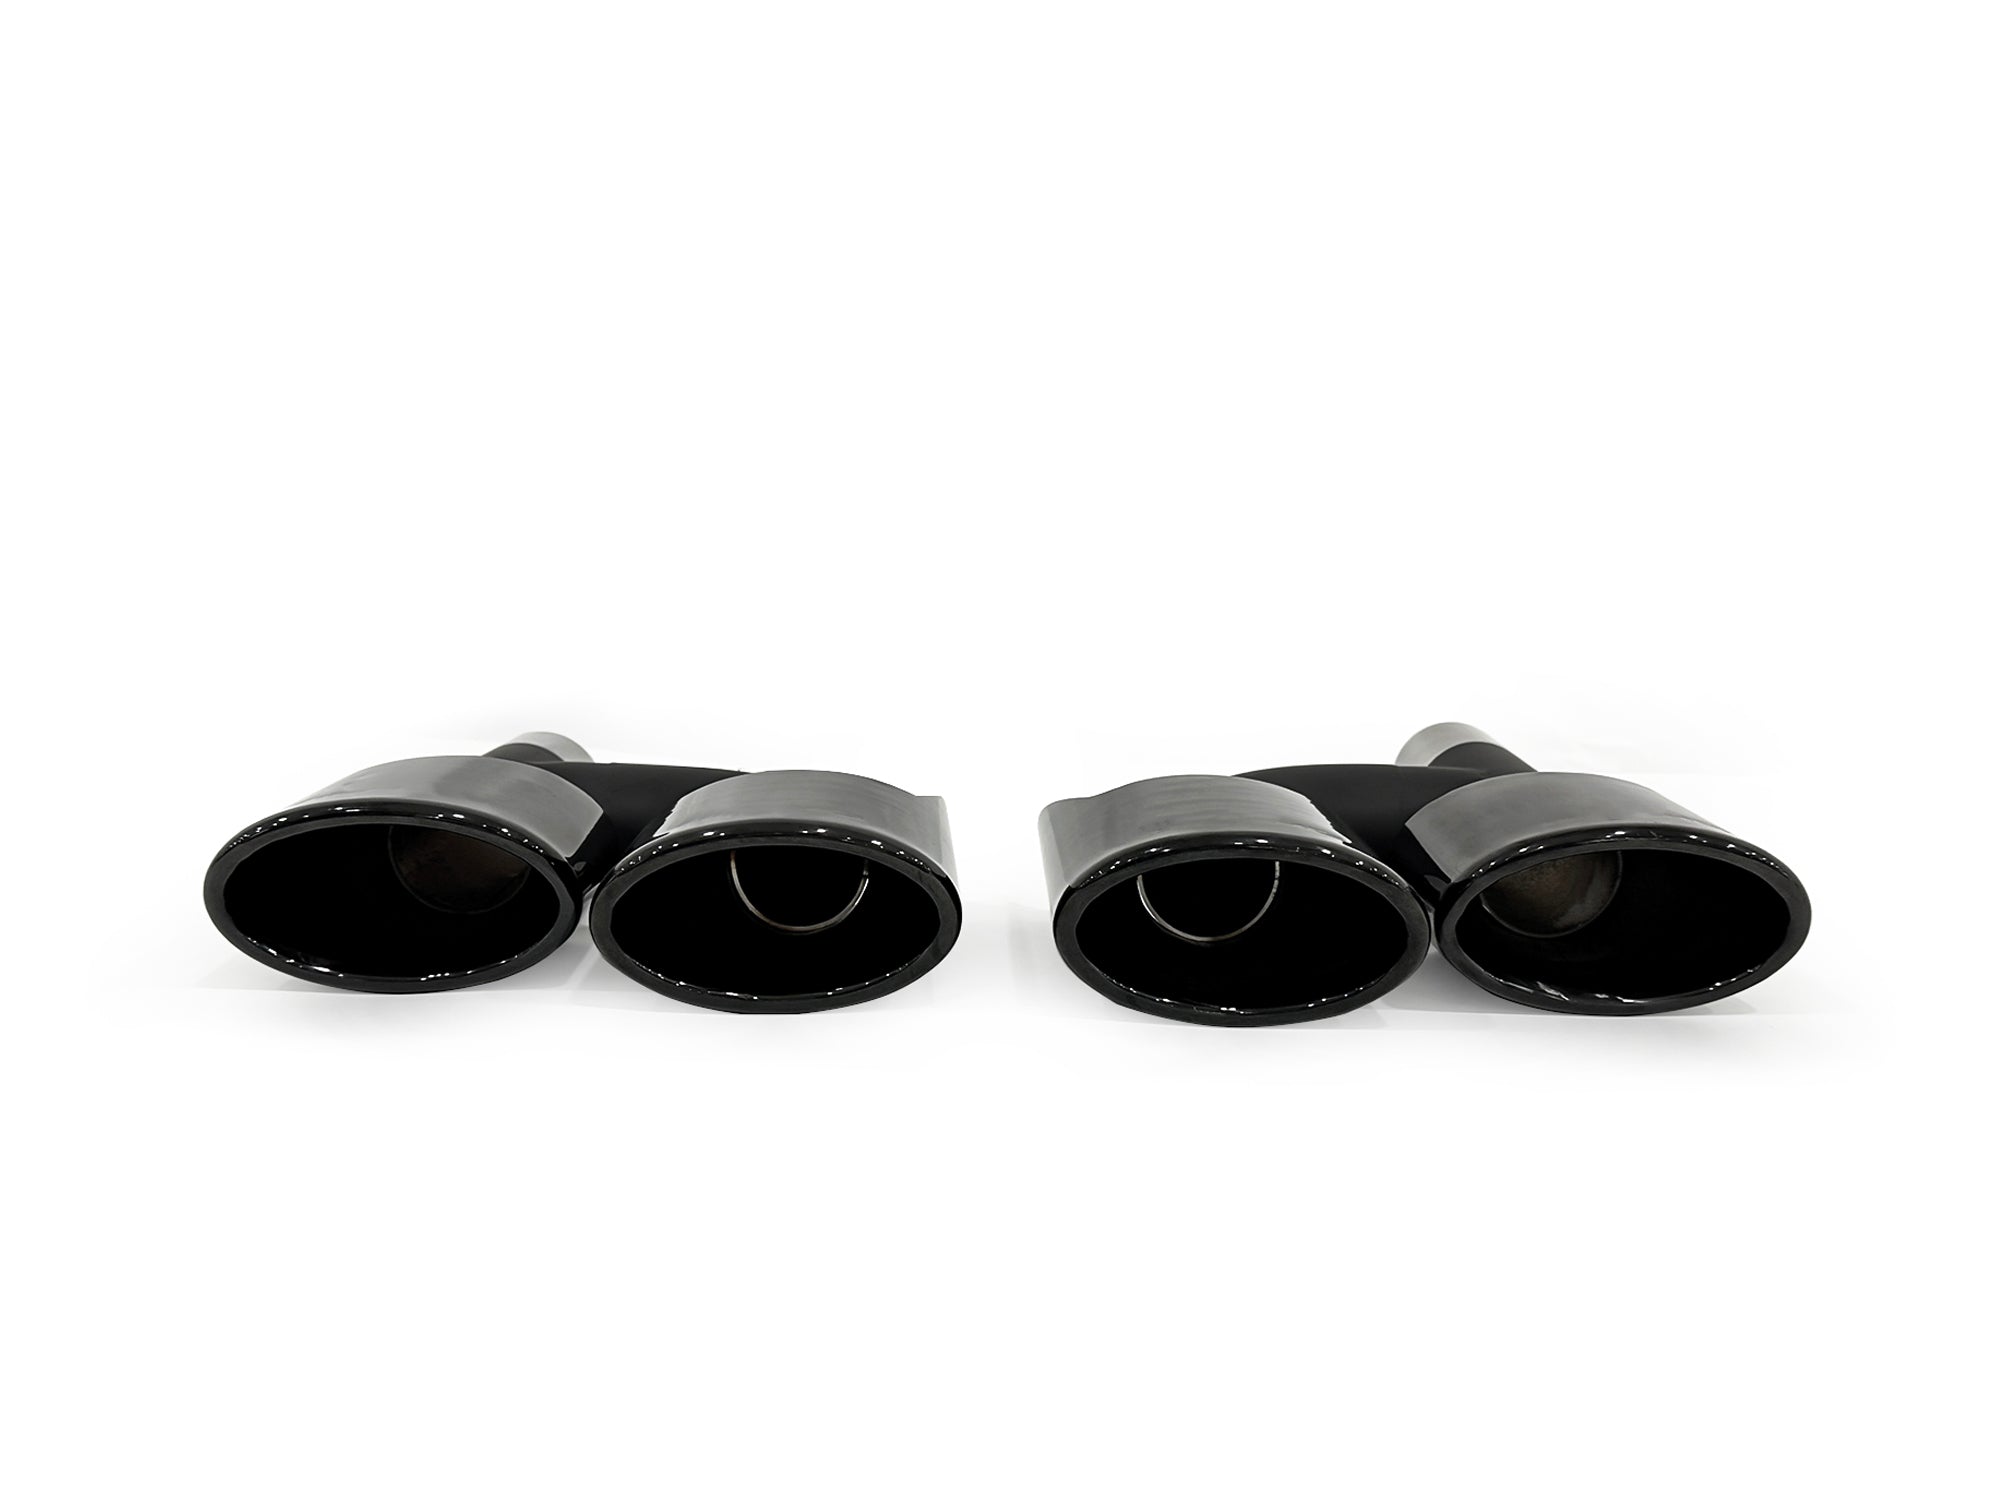 Schwarz Doppel-Auspuff Auspuffblenden Auspuff Endrohr für Mercedes Benz W221 W211 W204 C218 R171 et250